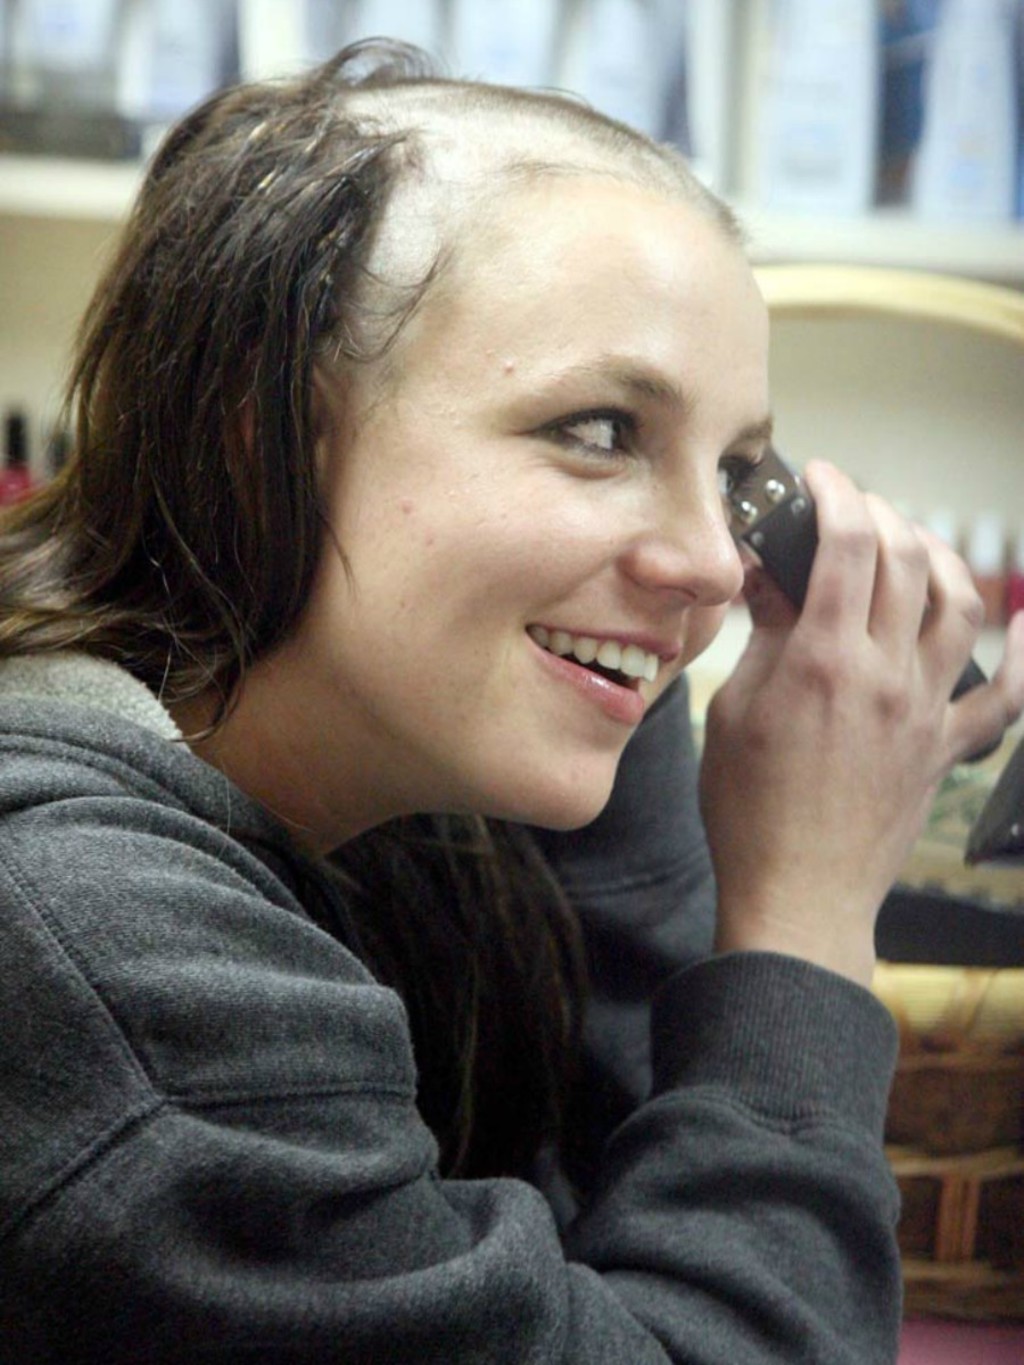 Revelan detalles del colapso de Britney Spears